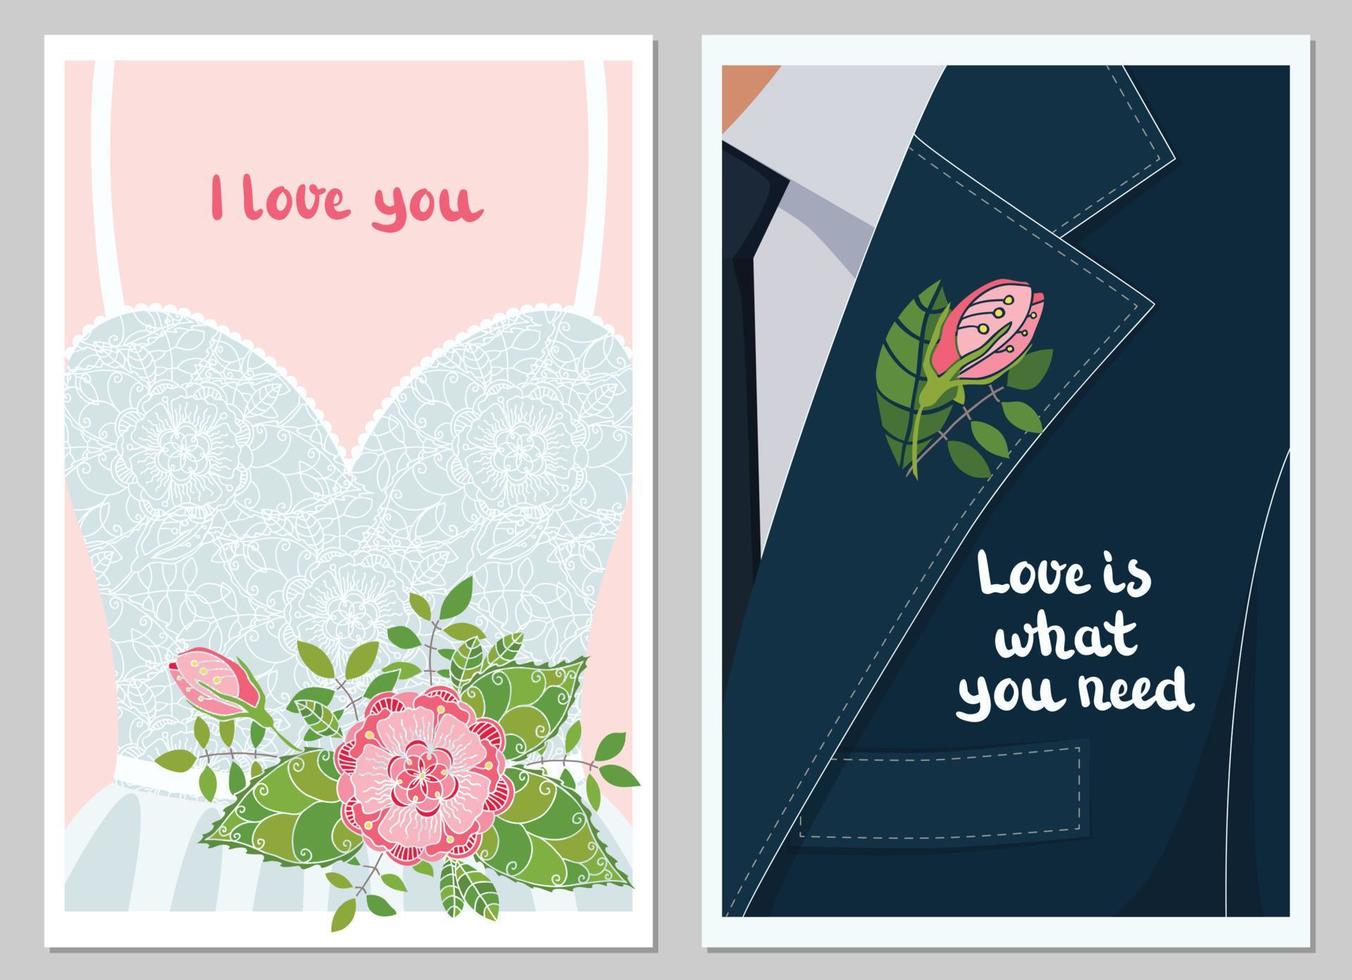 vectorillustratie. trouwkaarten met romantische letters. bruid en bruidegom. belettering - ik hou van je, liefde is wat je nodig hebt. decoratieve bruiloft bloemen - boeket, corsages. jurk en pak. vector